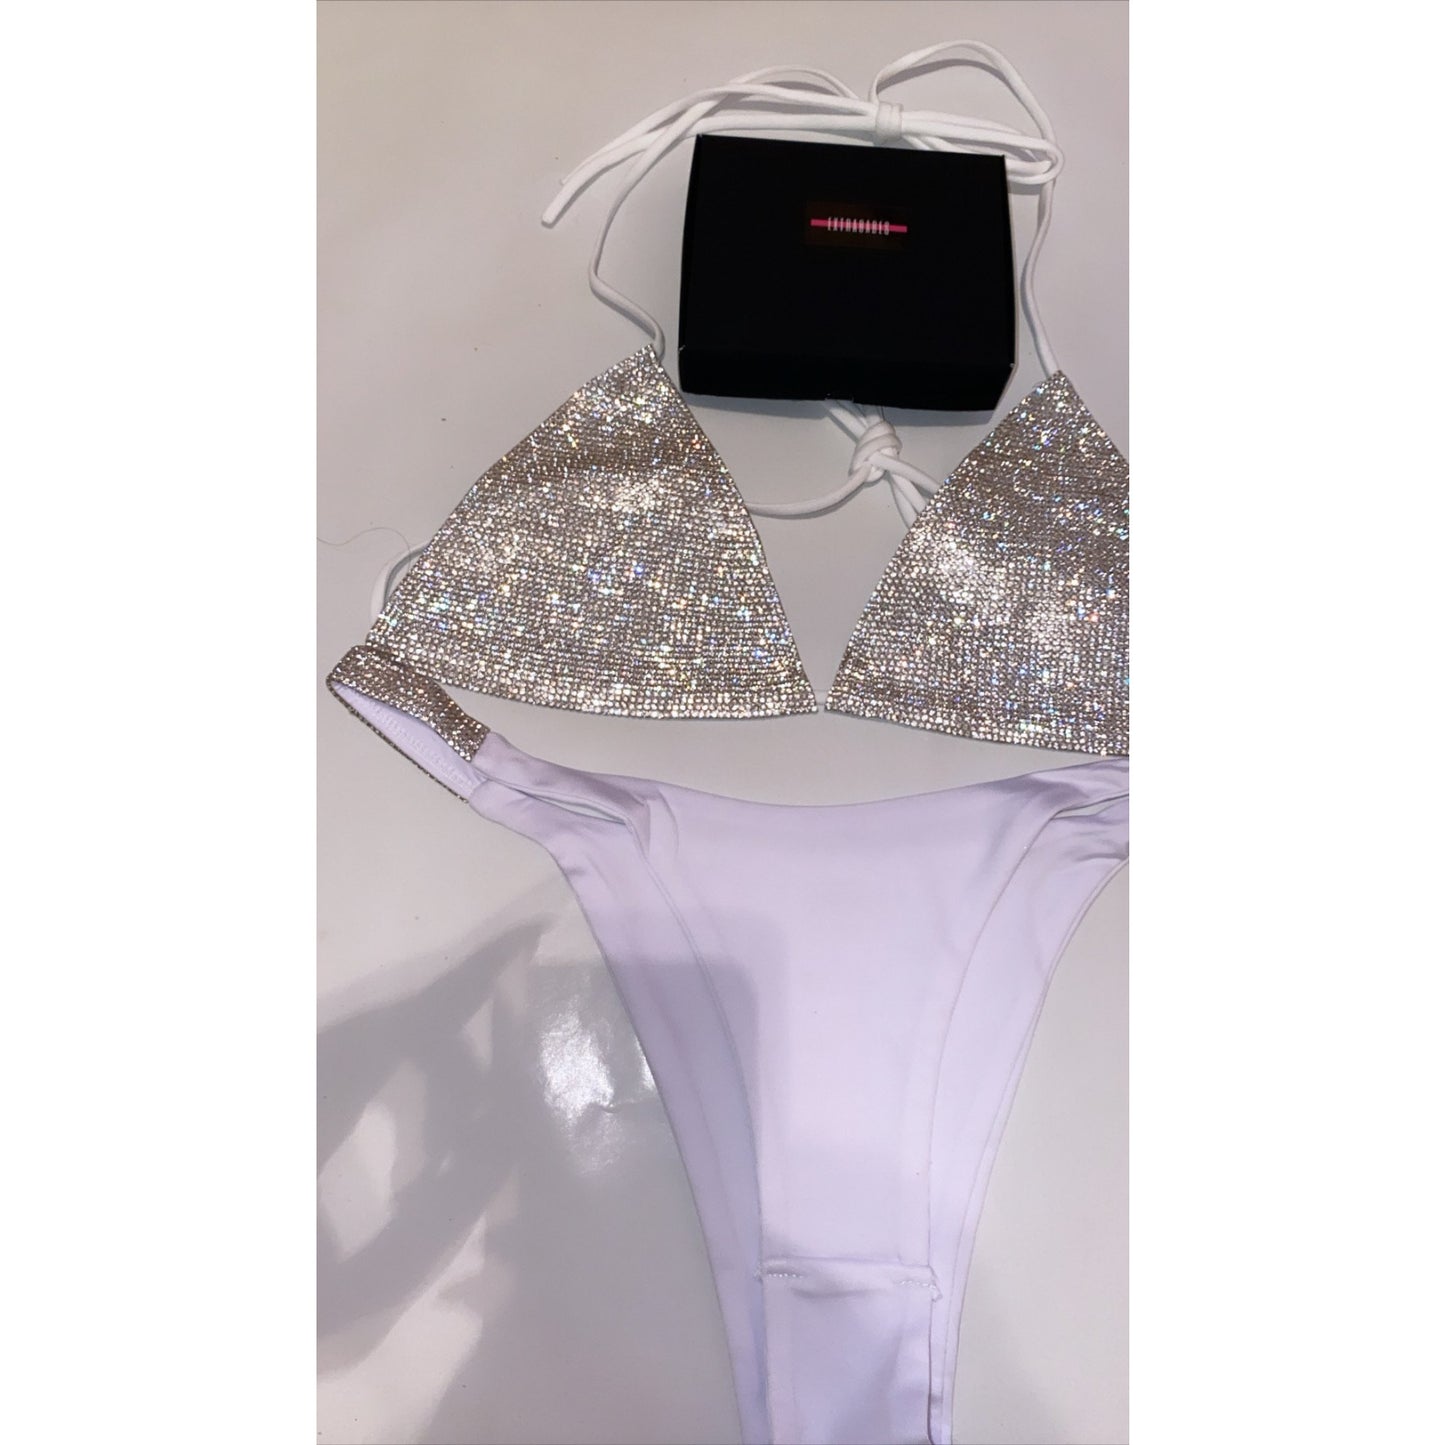 COSTUM DE BAIE 'WHITE DIAMOND' - Costum de baie alb din doua piese cu aplicatii tip stras pe sutienul tip triunghi, si bikini stilul brazilian